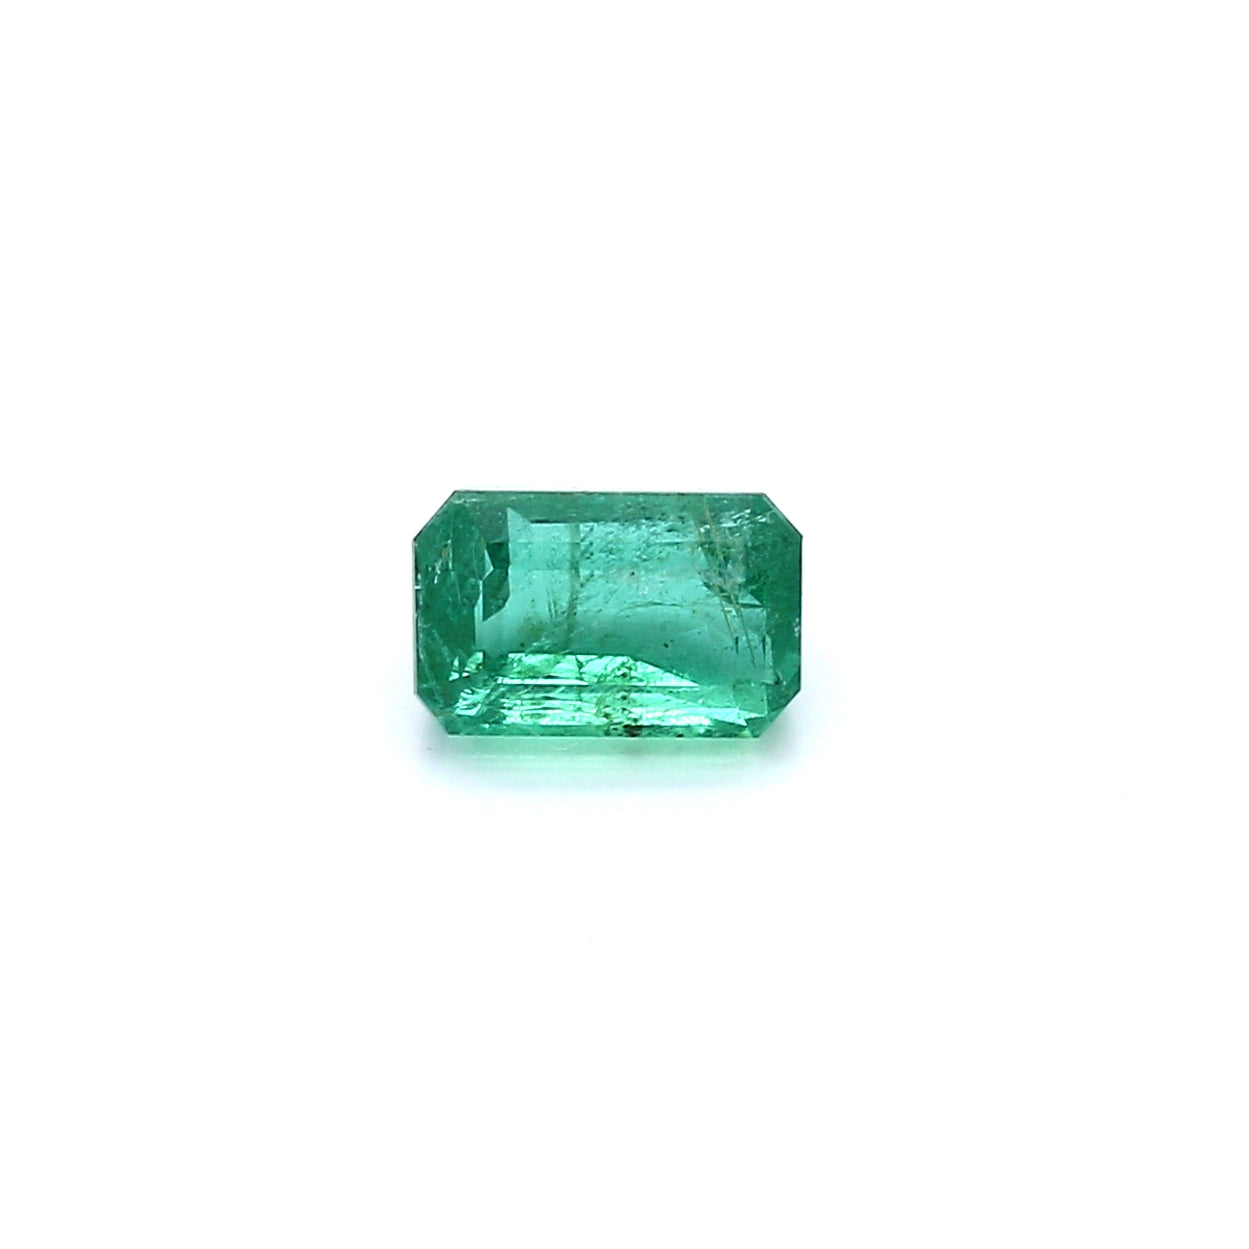 1.02ct Octagon Emerald, Minor Oil, Zambia - 6.77 x 4.44 x 3.97mm